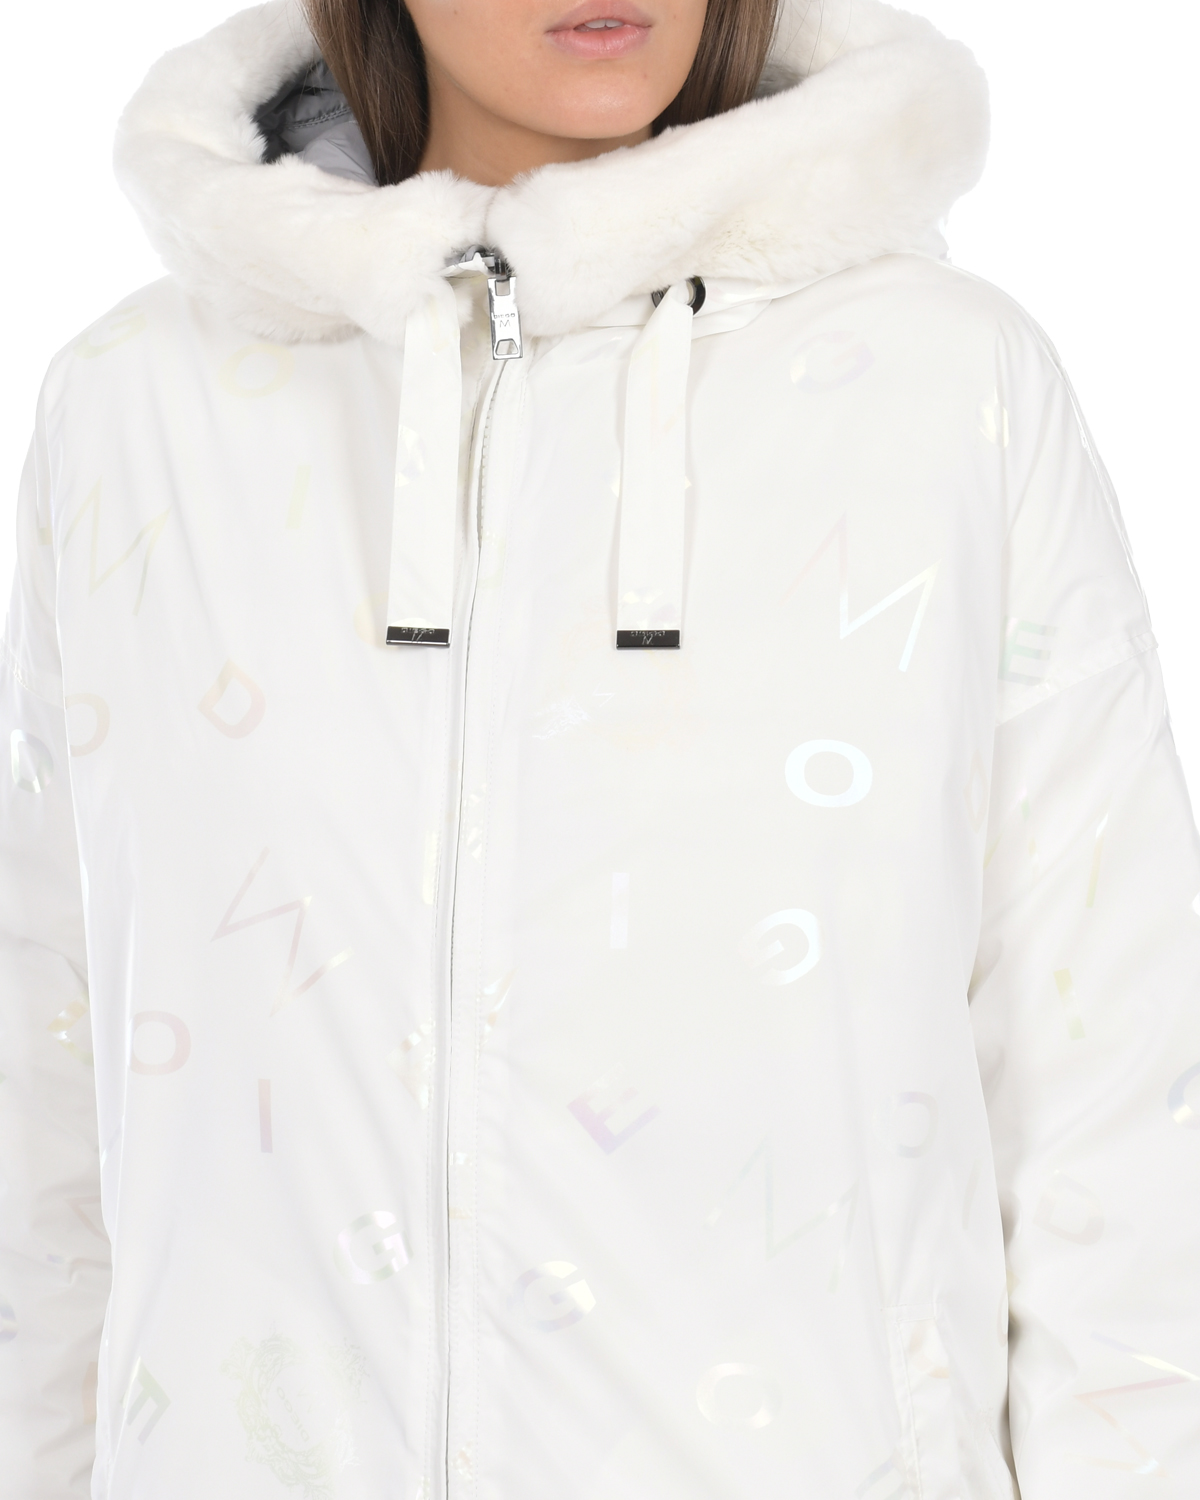 Двухсторонняя куртка с меховой отделкой на капюшоне Diego M, размер 46, цвет белый - фото 6